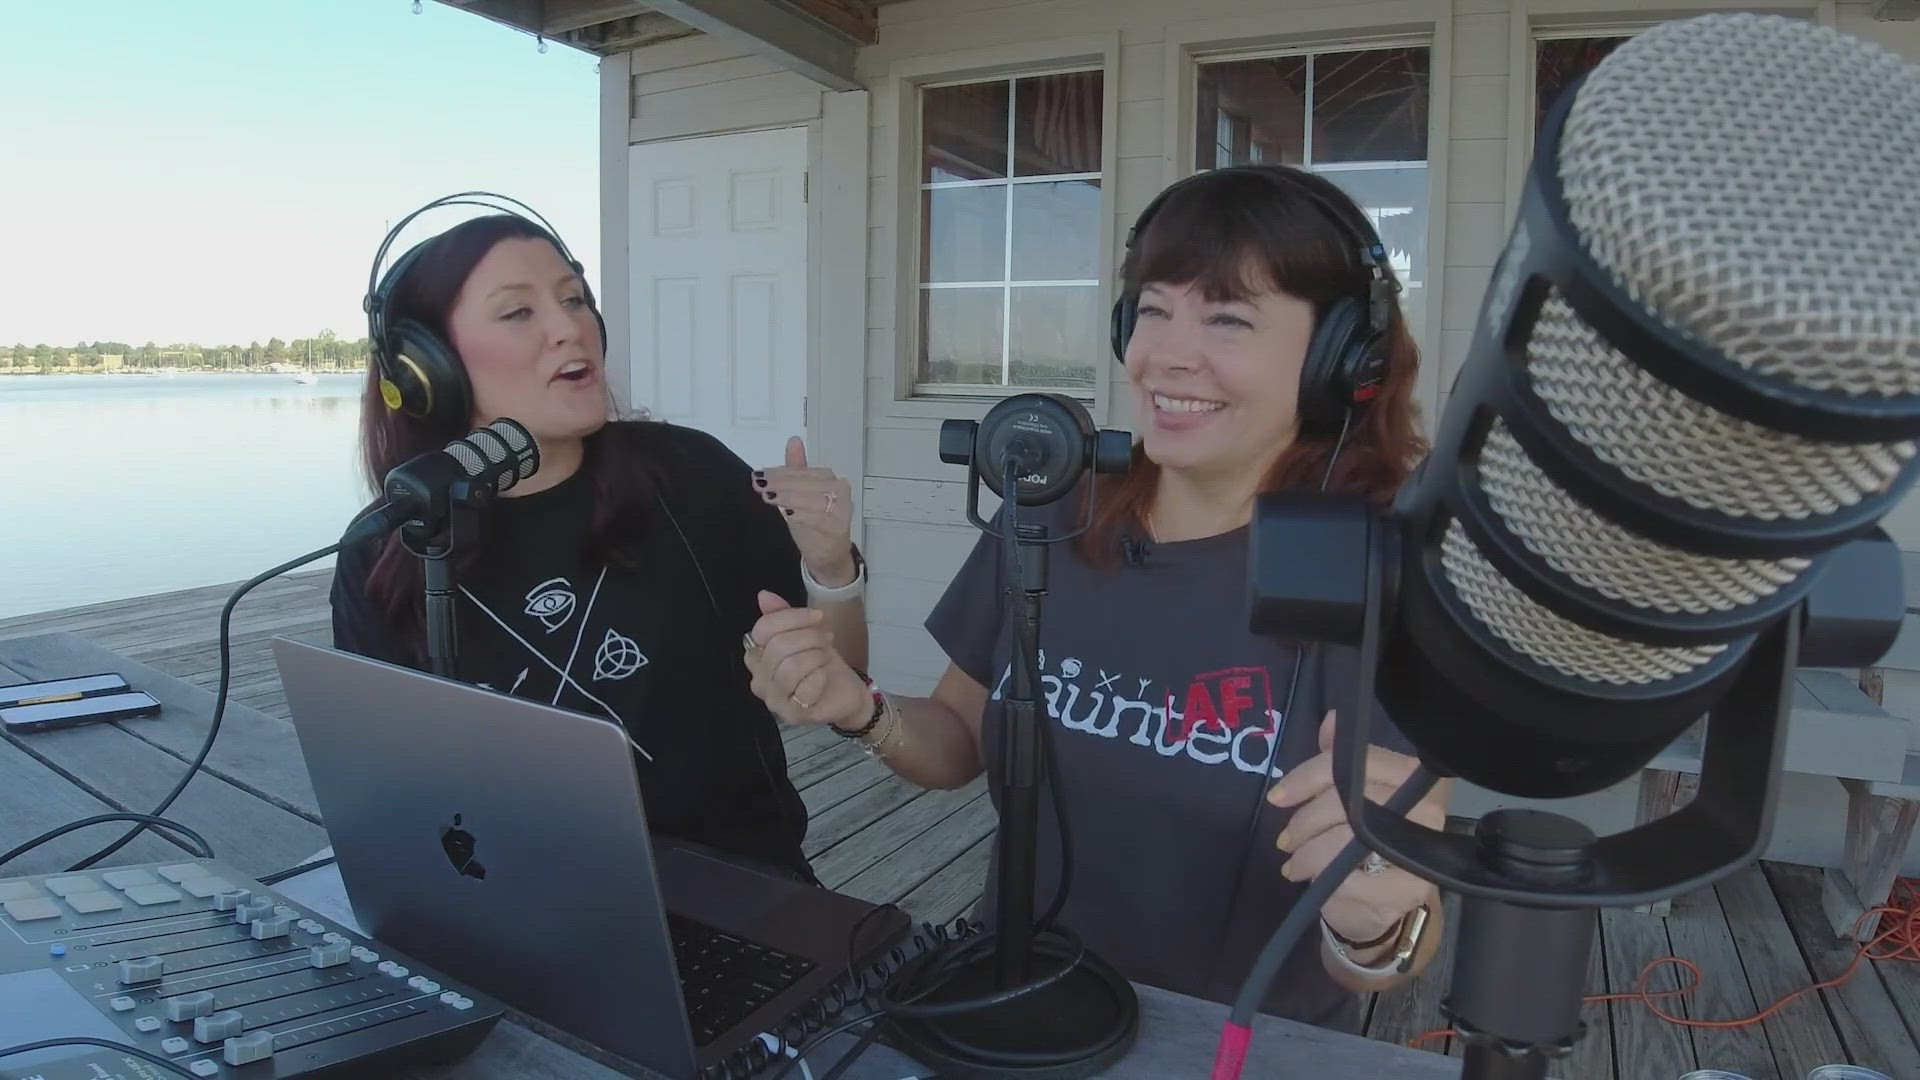 Julie Fisk and Rebekah Black host the popular “Haunted AF” podcast.